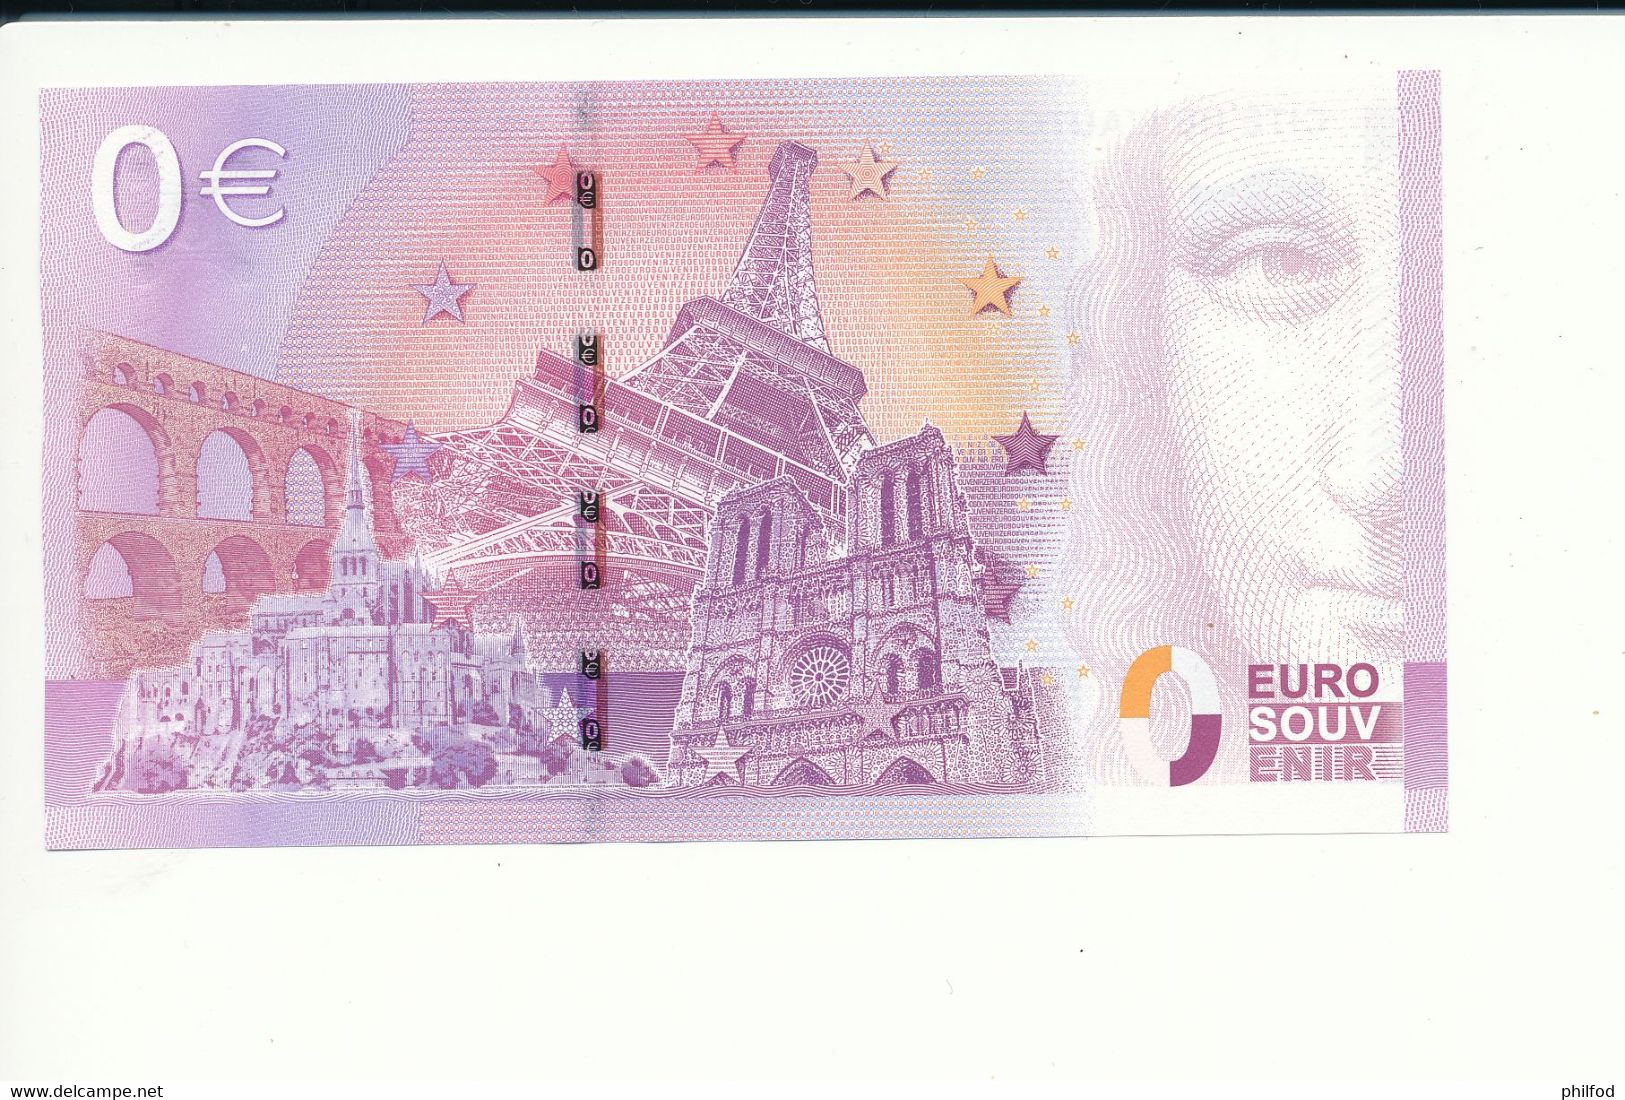 2015-1 - Billet Souvenir - 0 Euro - UEAP -  CITÉ DE L'AUTOMOBILE COLLECTION SCHLUMPF -  n° 6498 - Billet épuisé - Essais Privés / Non-officiels